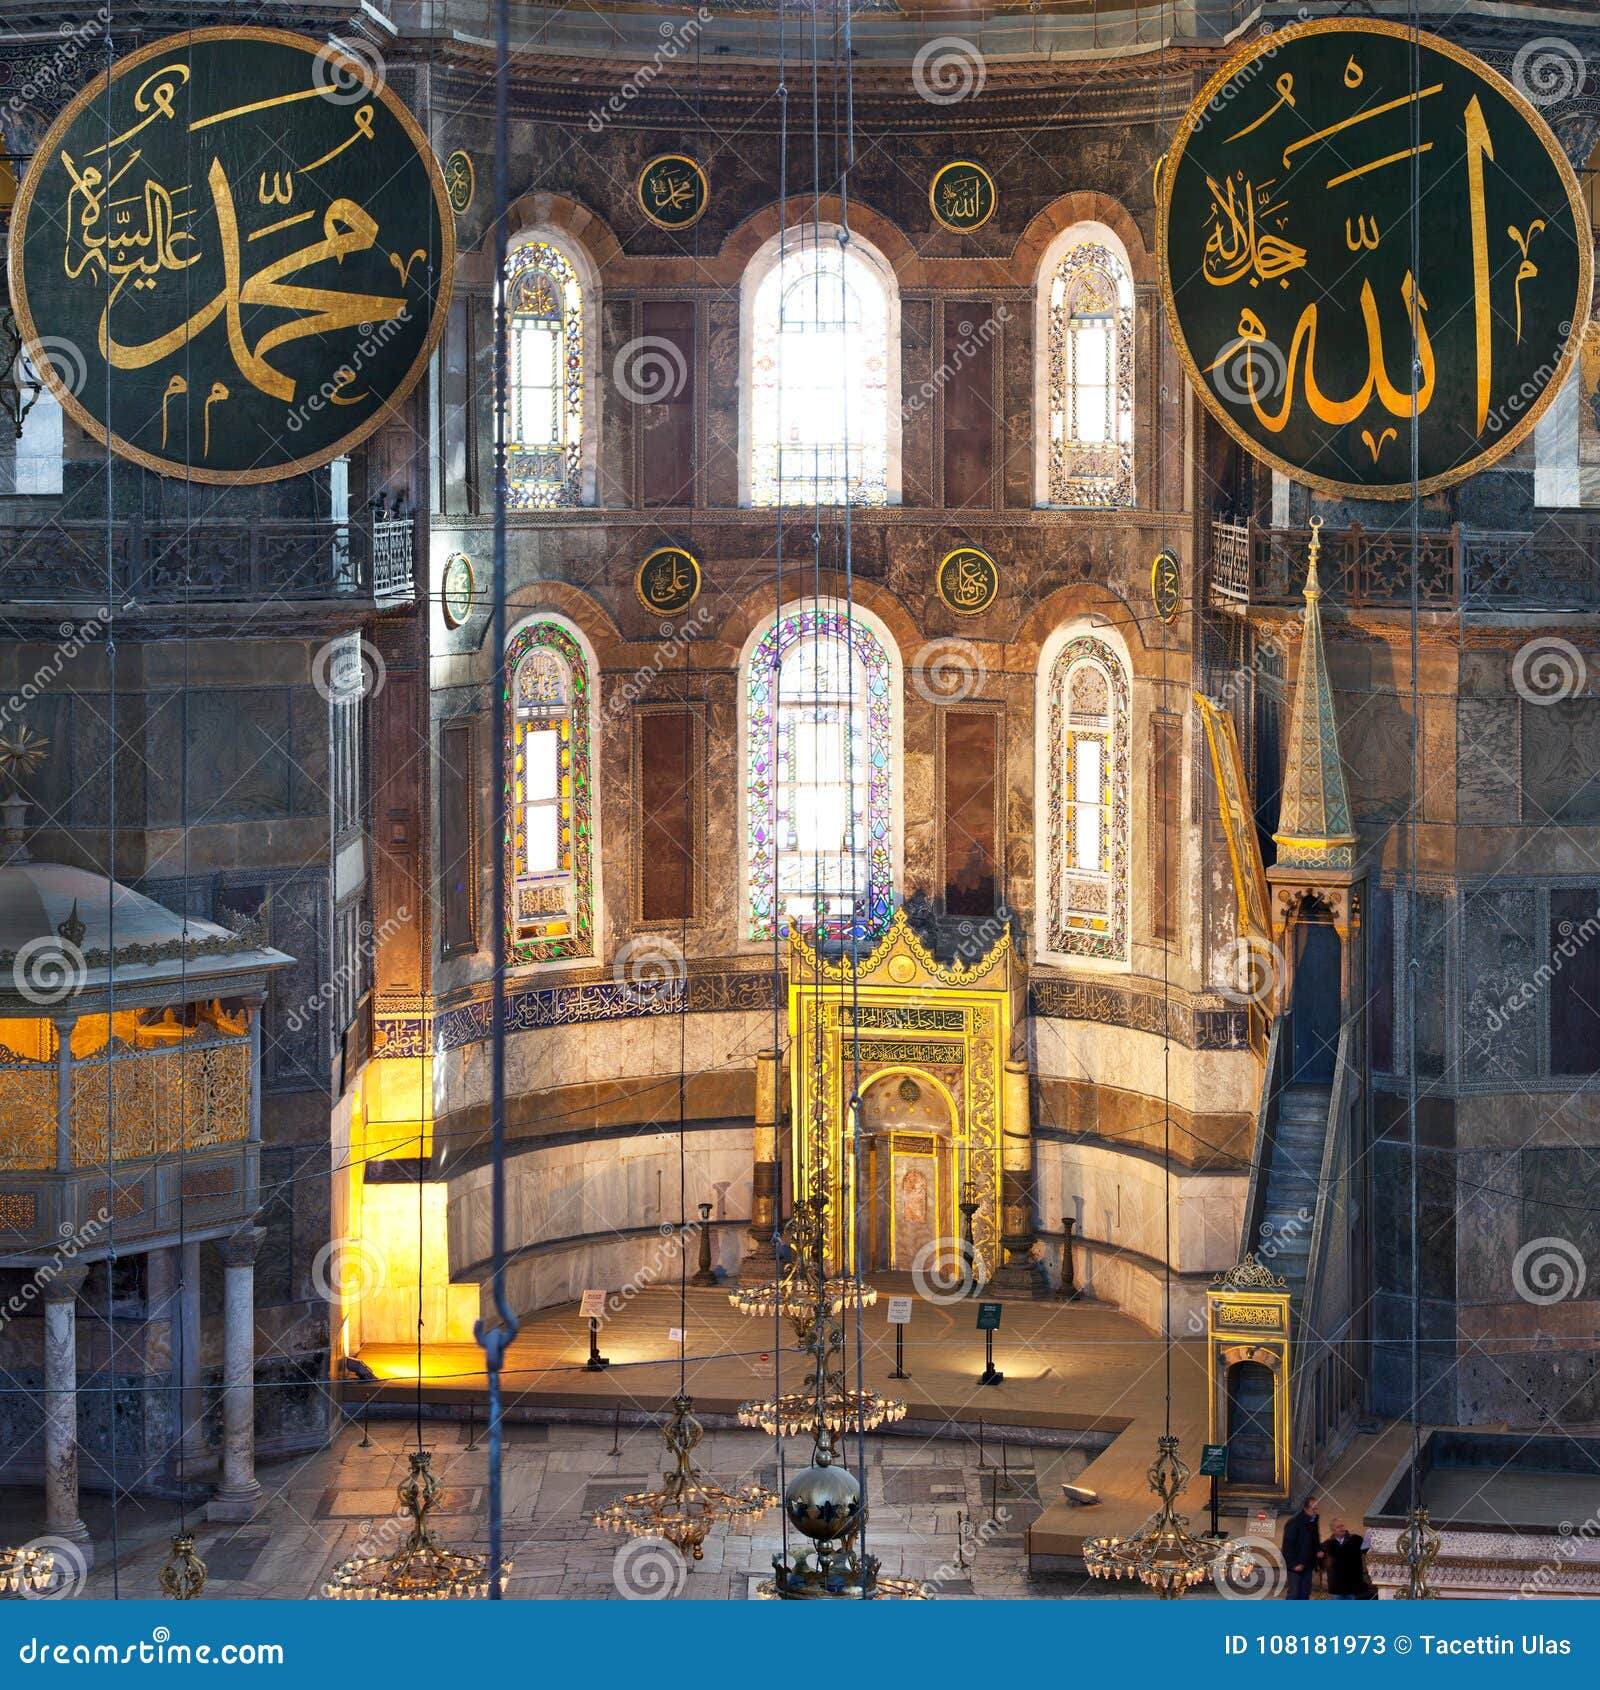 Interior Of Hagia Sophia Museum In Istanbul Turkey